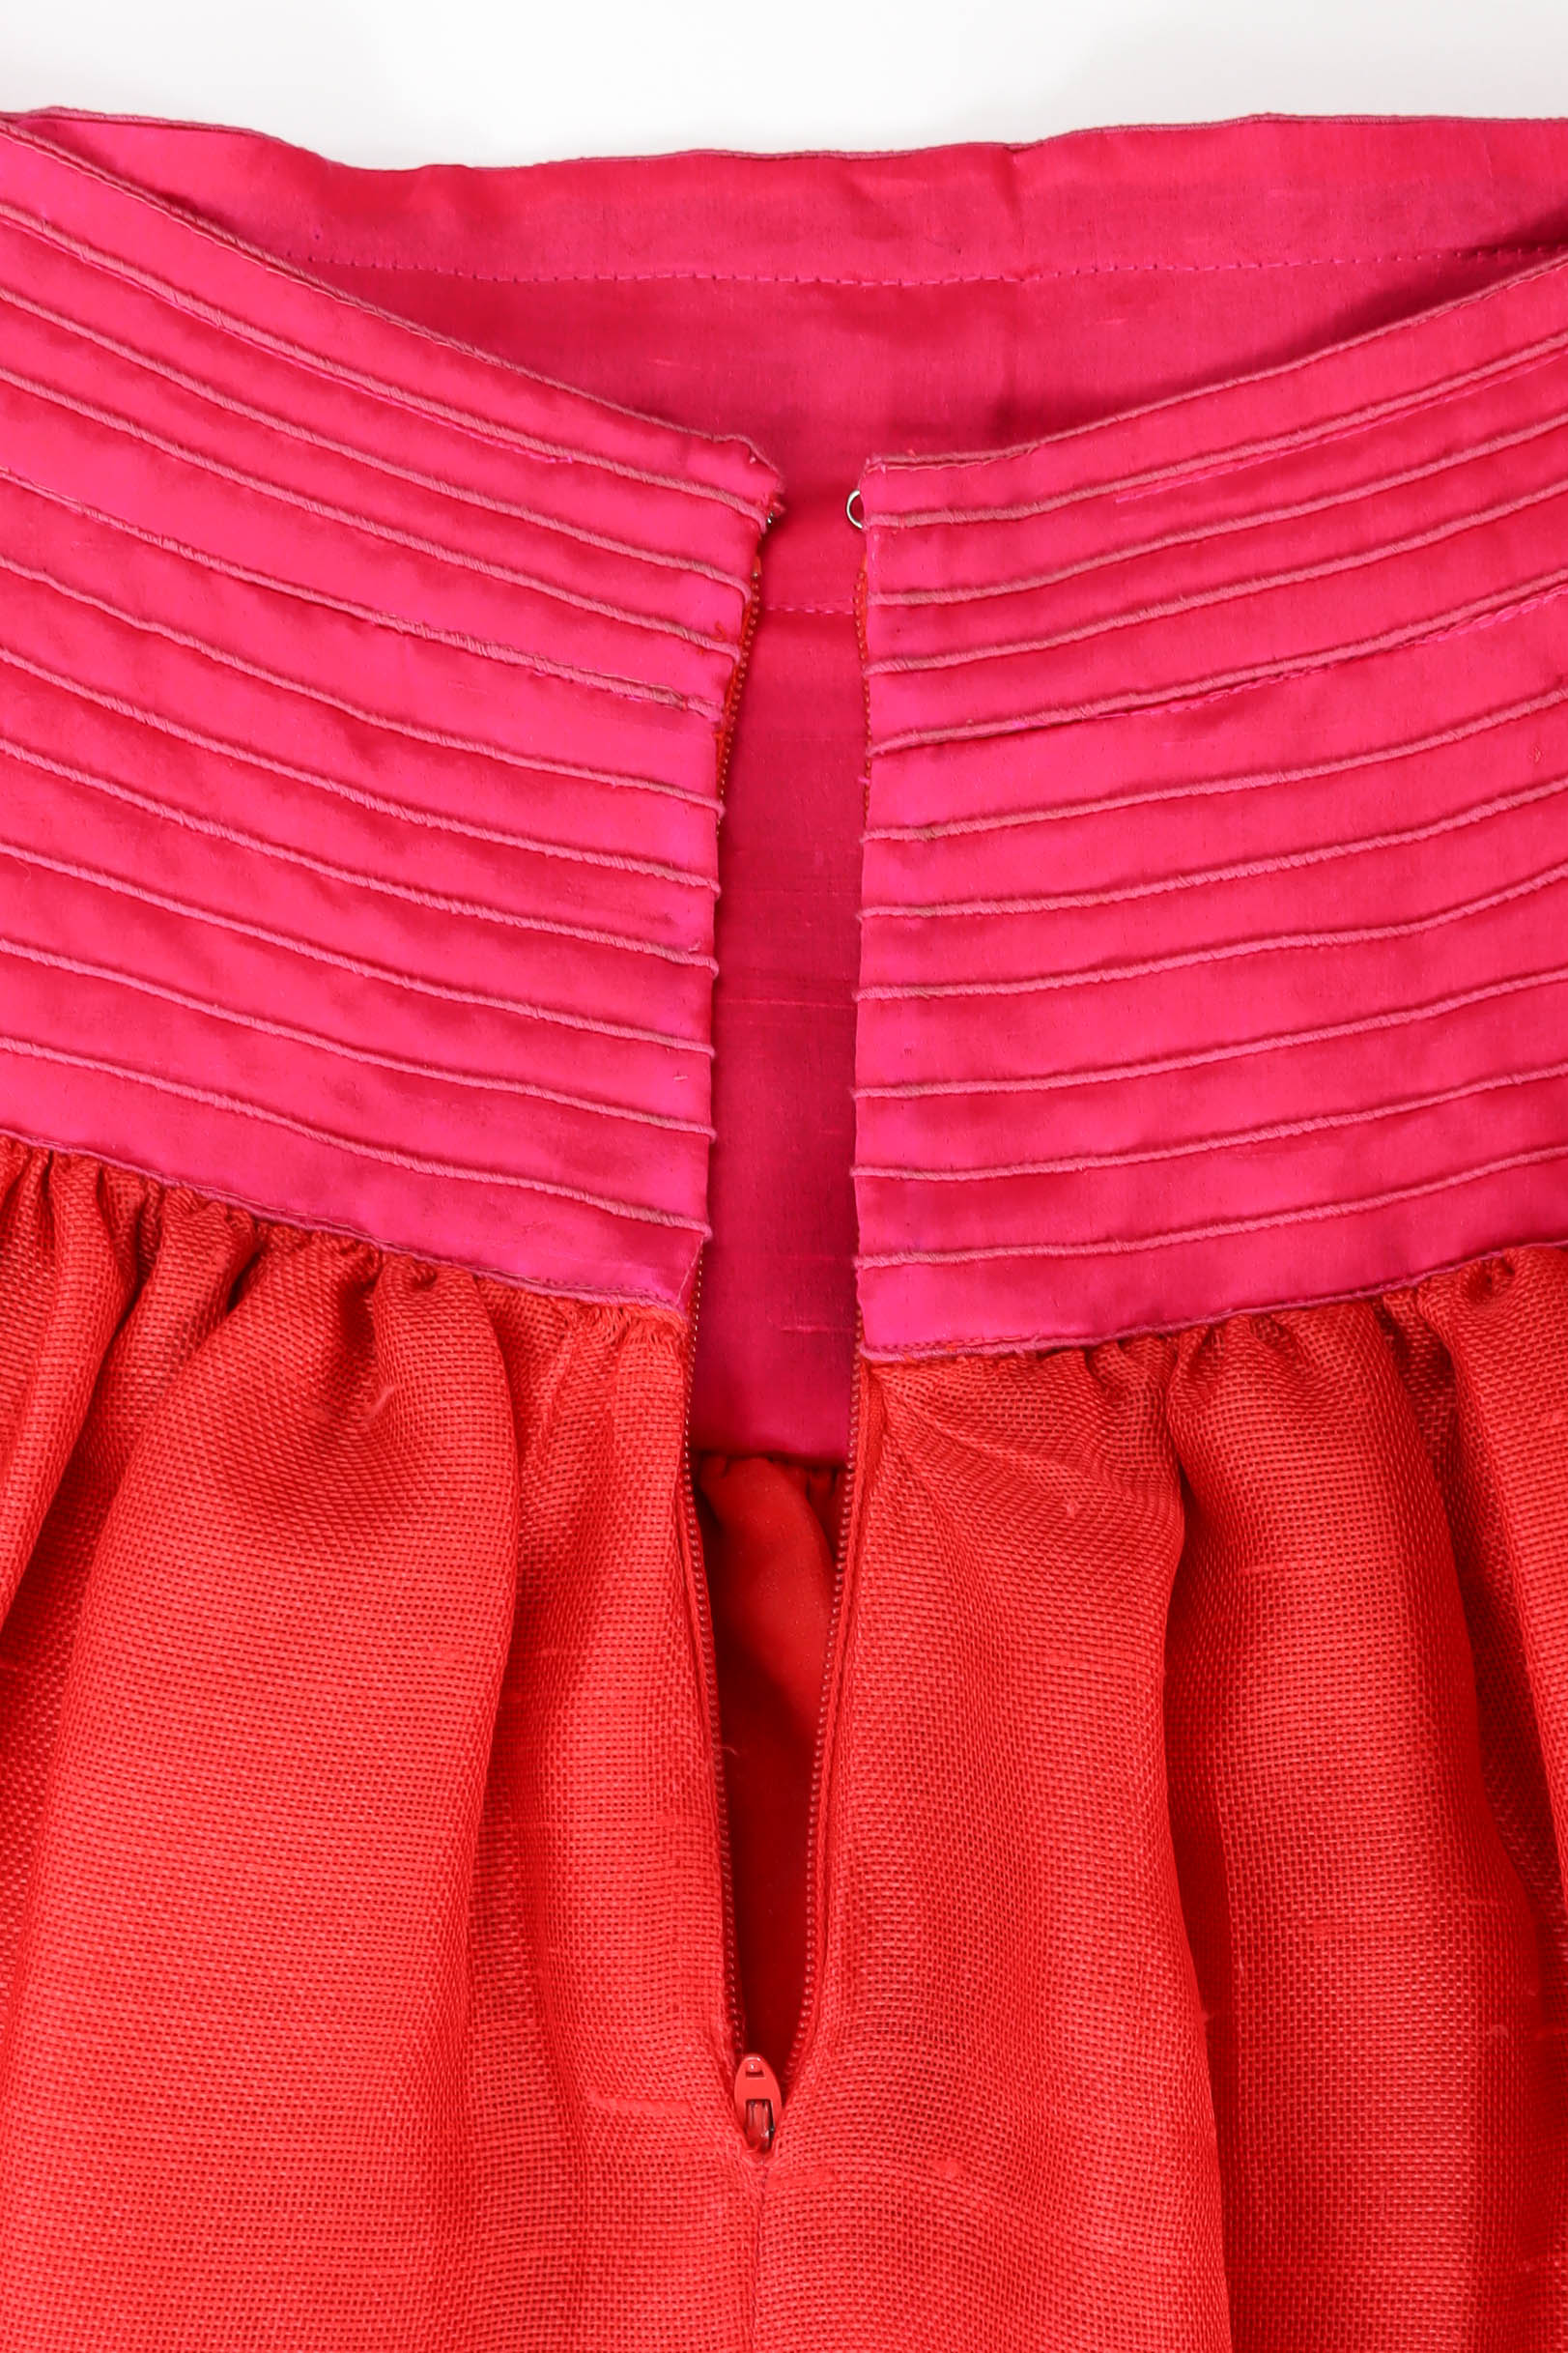 Vintage Oscar de la Renta Floral Top & Skirt Set back zipper skirt @ Recess LA